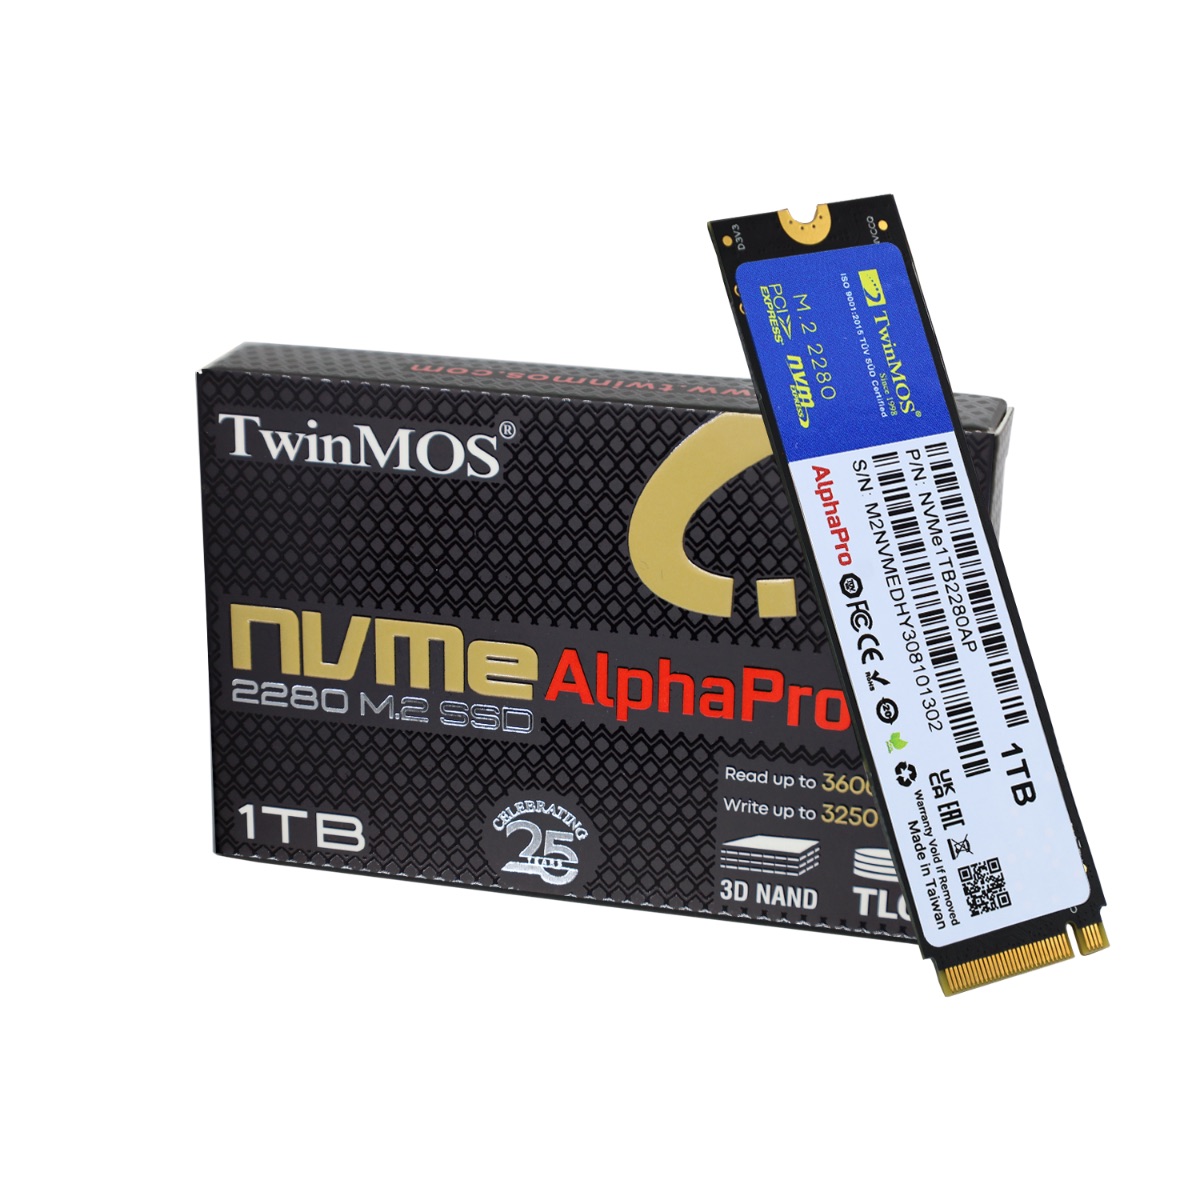 TWINMOS 1TB 3600/3250Mb/s M2 PCIE GEN3 NVME SSD NVMe1TB2280AP 3D-NAND